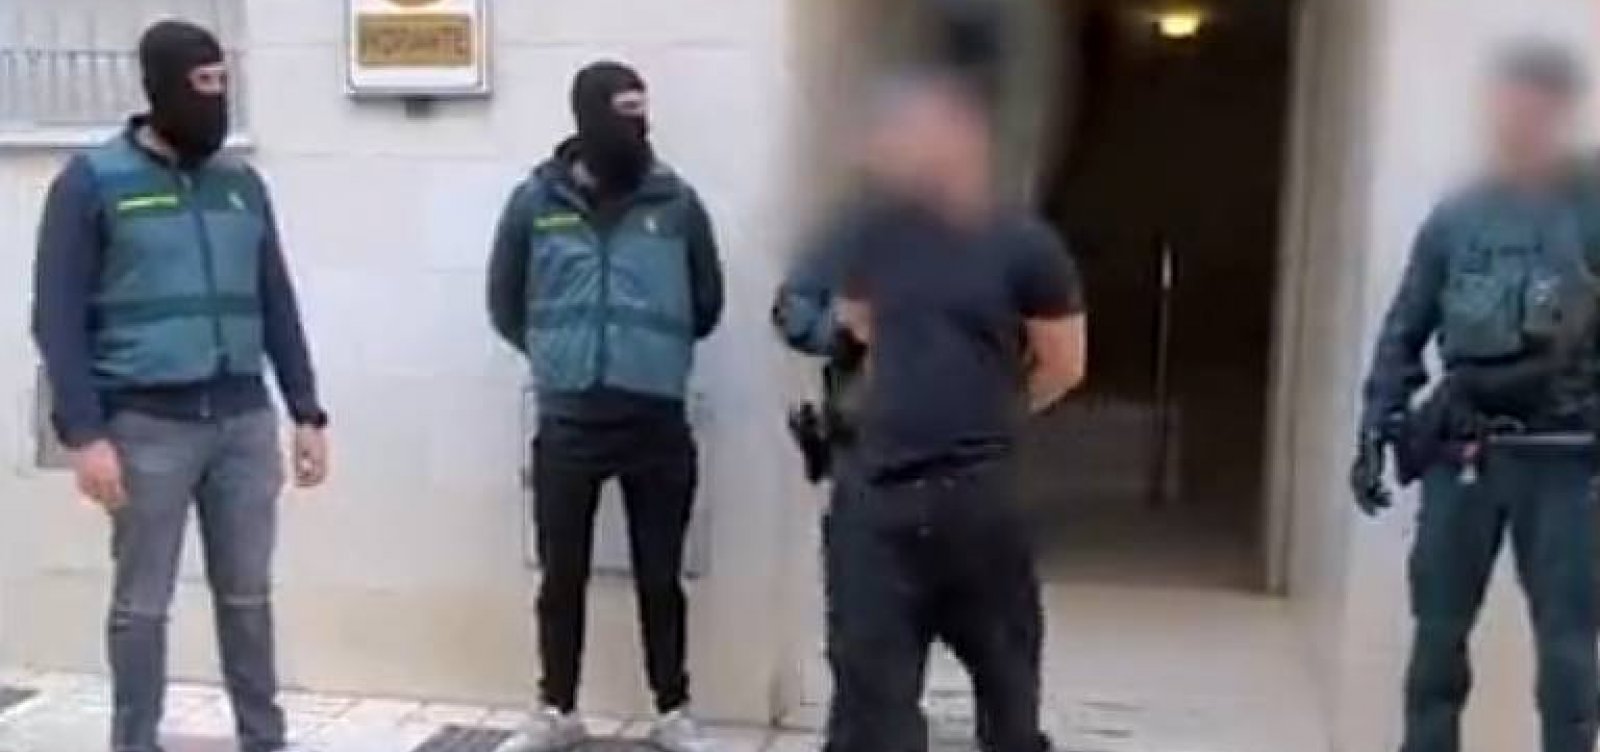 Brasileiros são presos na Espanha por suspeita de ligação com grupo terrorista